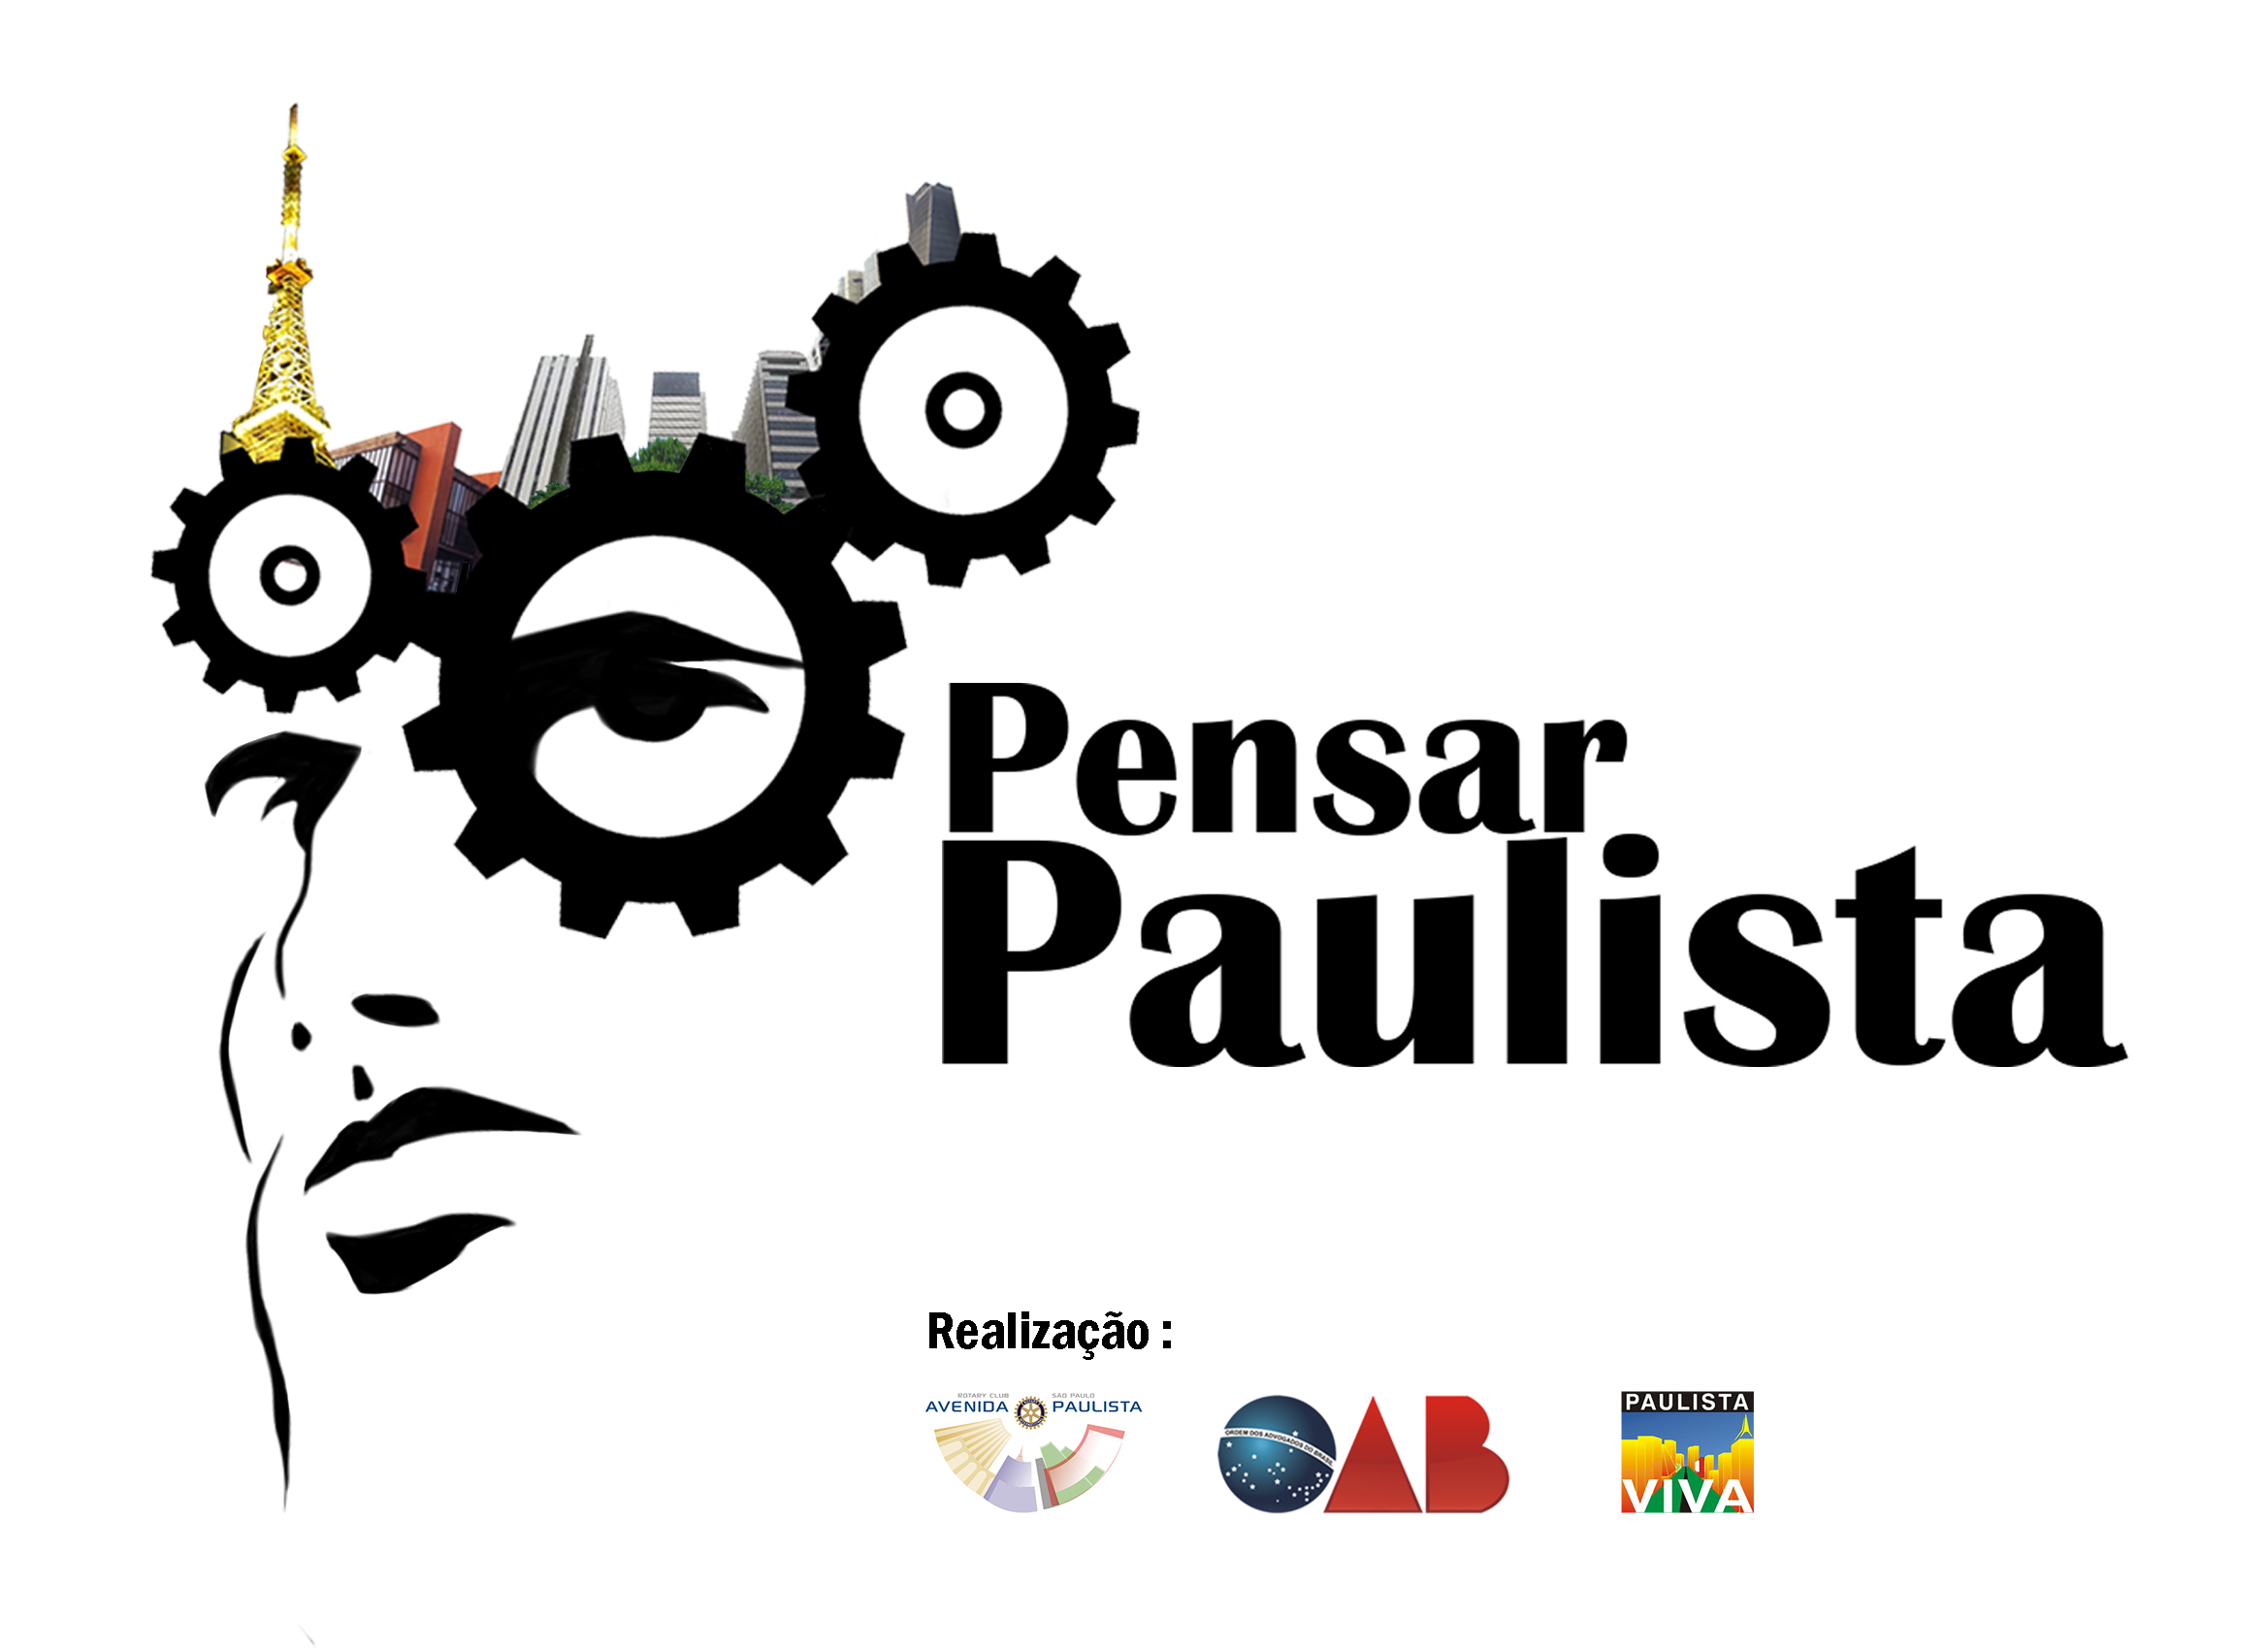 Associação Paulista Viva realiza Fórum para pensar Avenida Paulista com foco em 2021